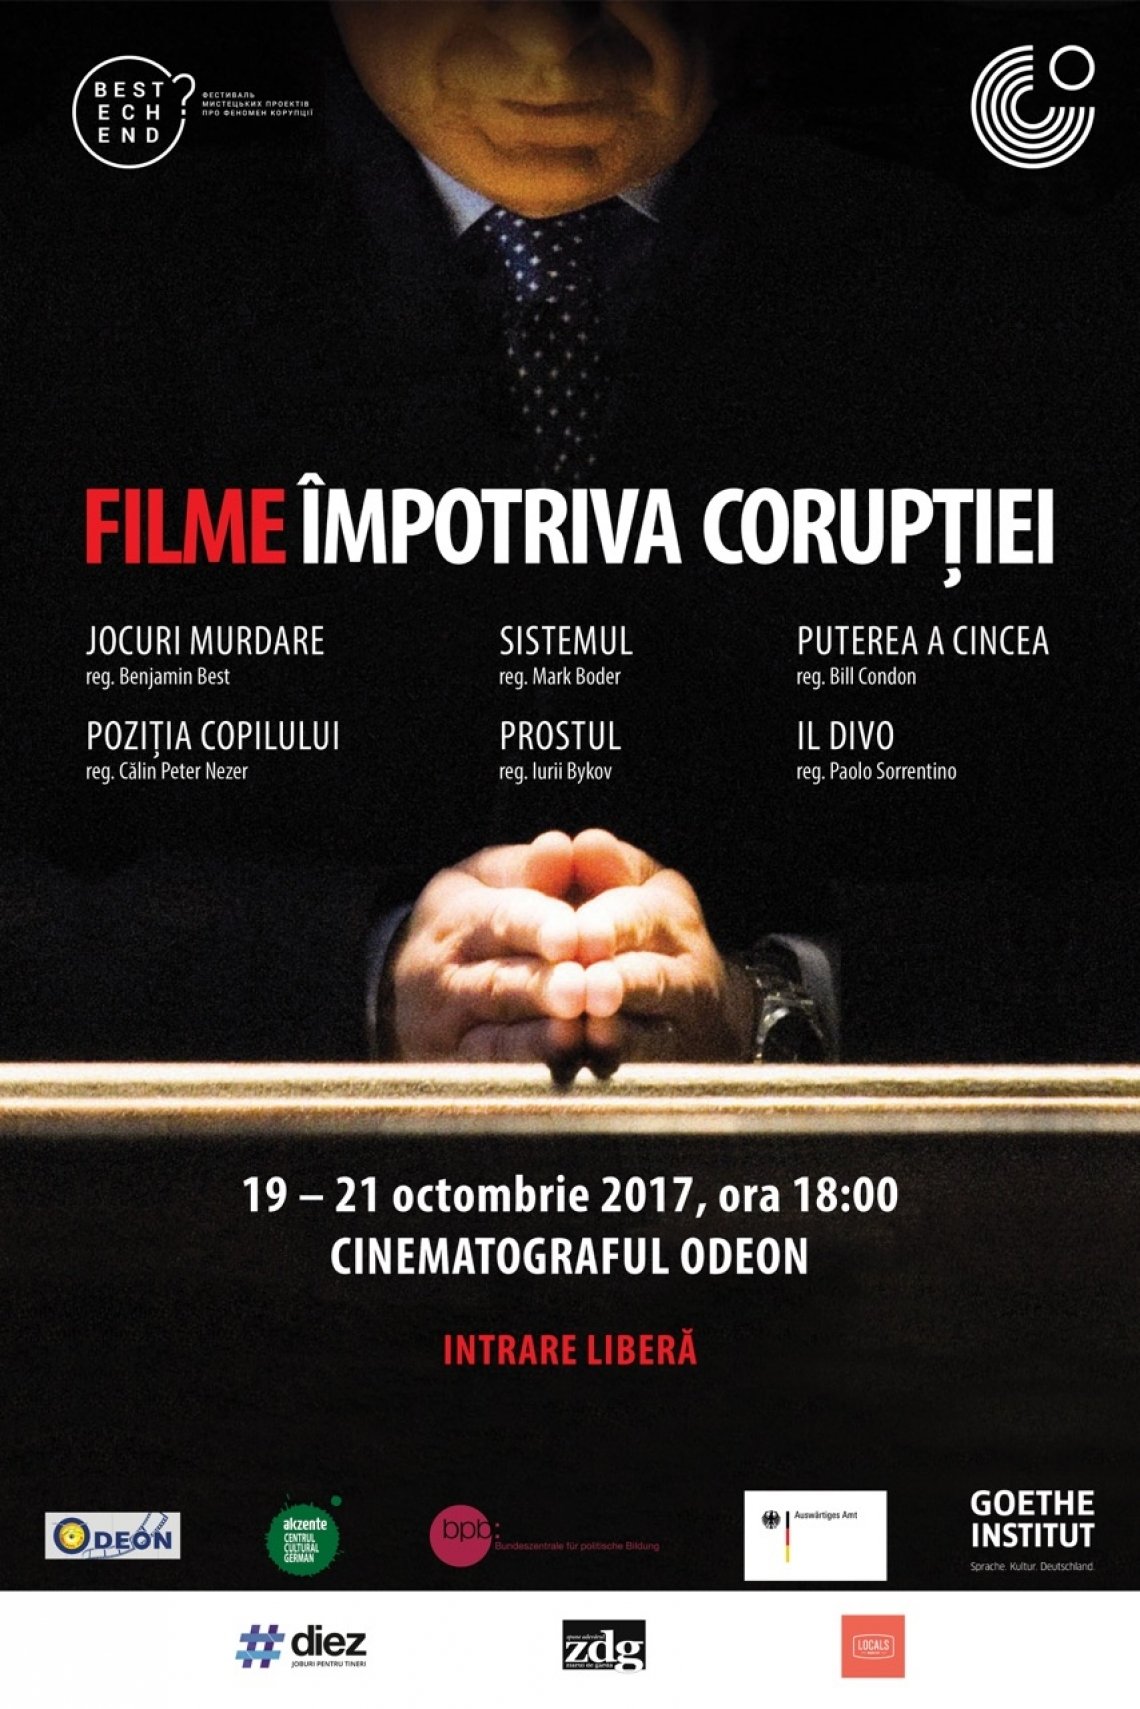 FESTIVALUL ”FILME IMPOTRIVA CORUPTIEI”